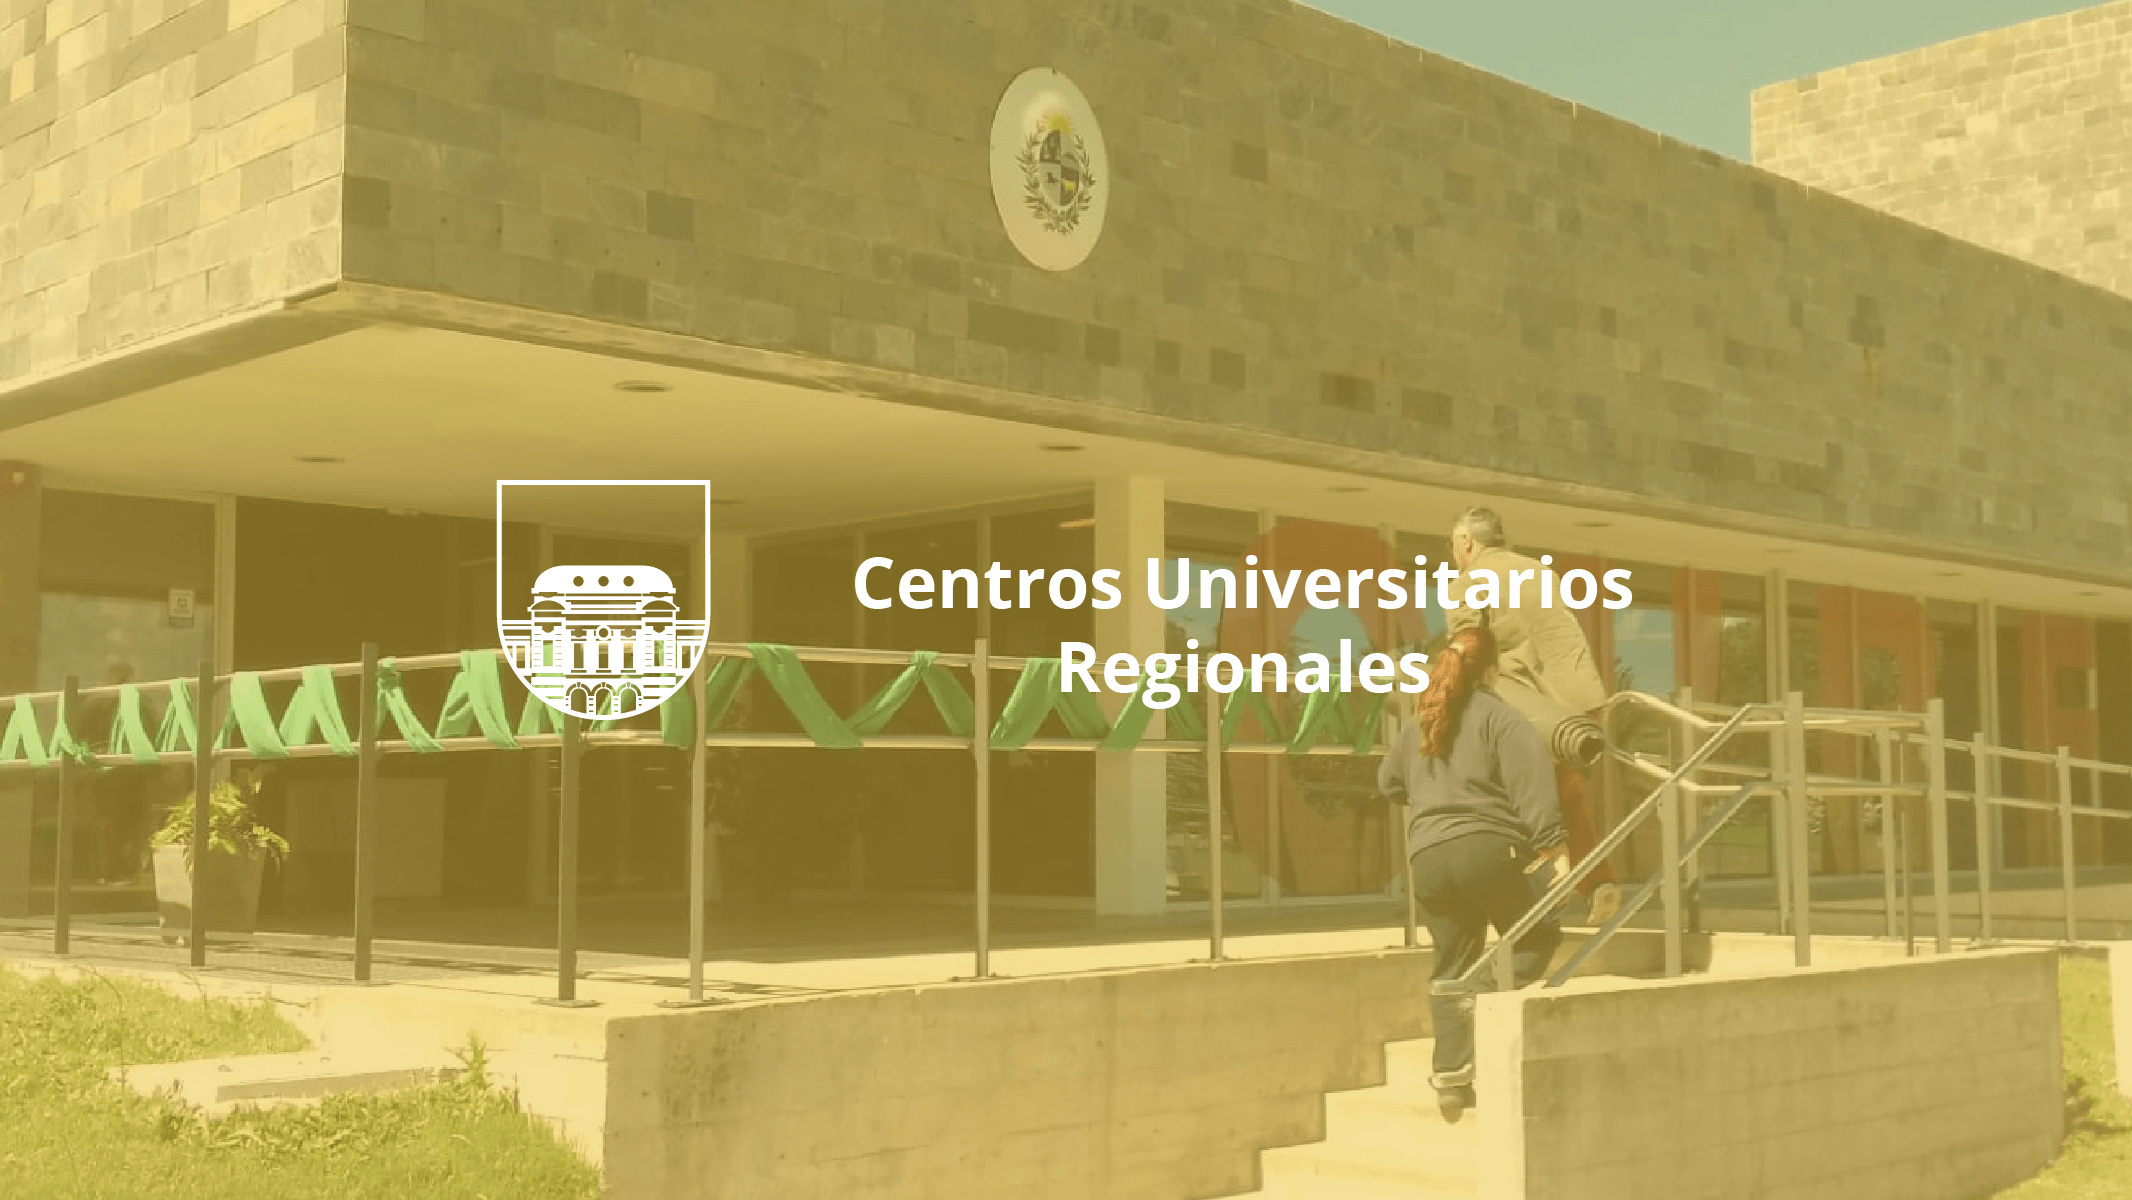 Centros Universitarios Regionales